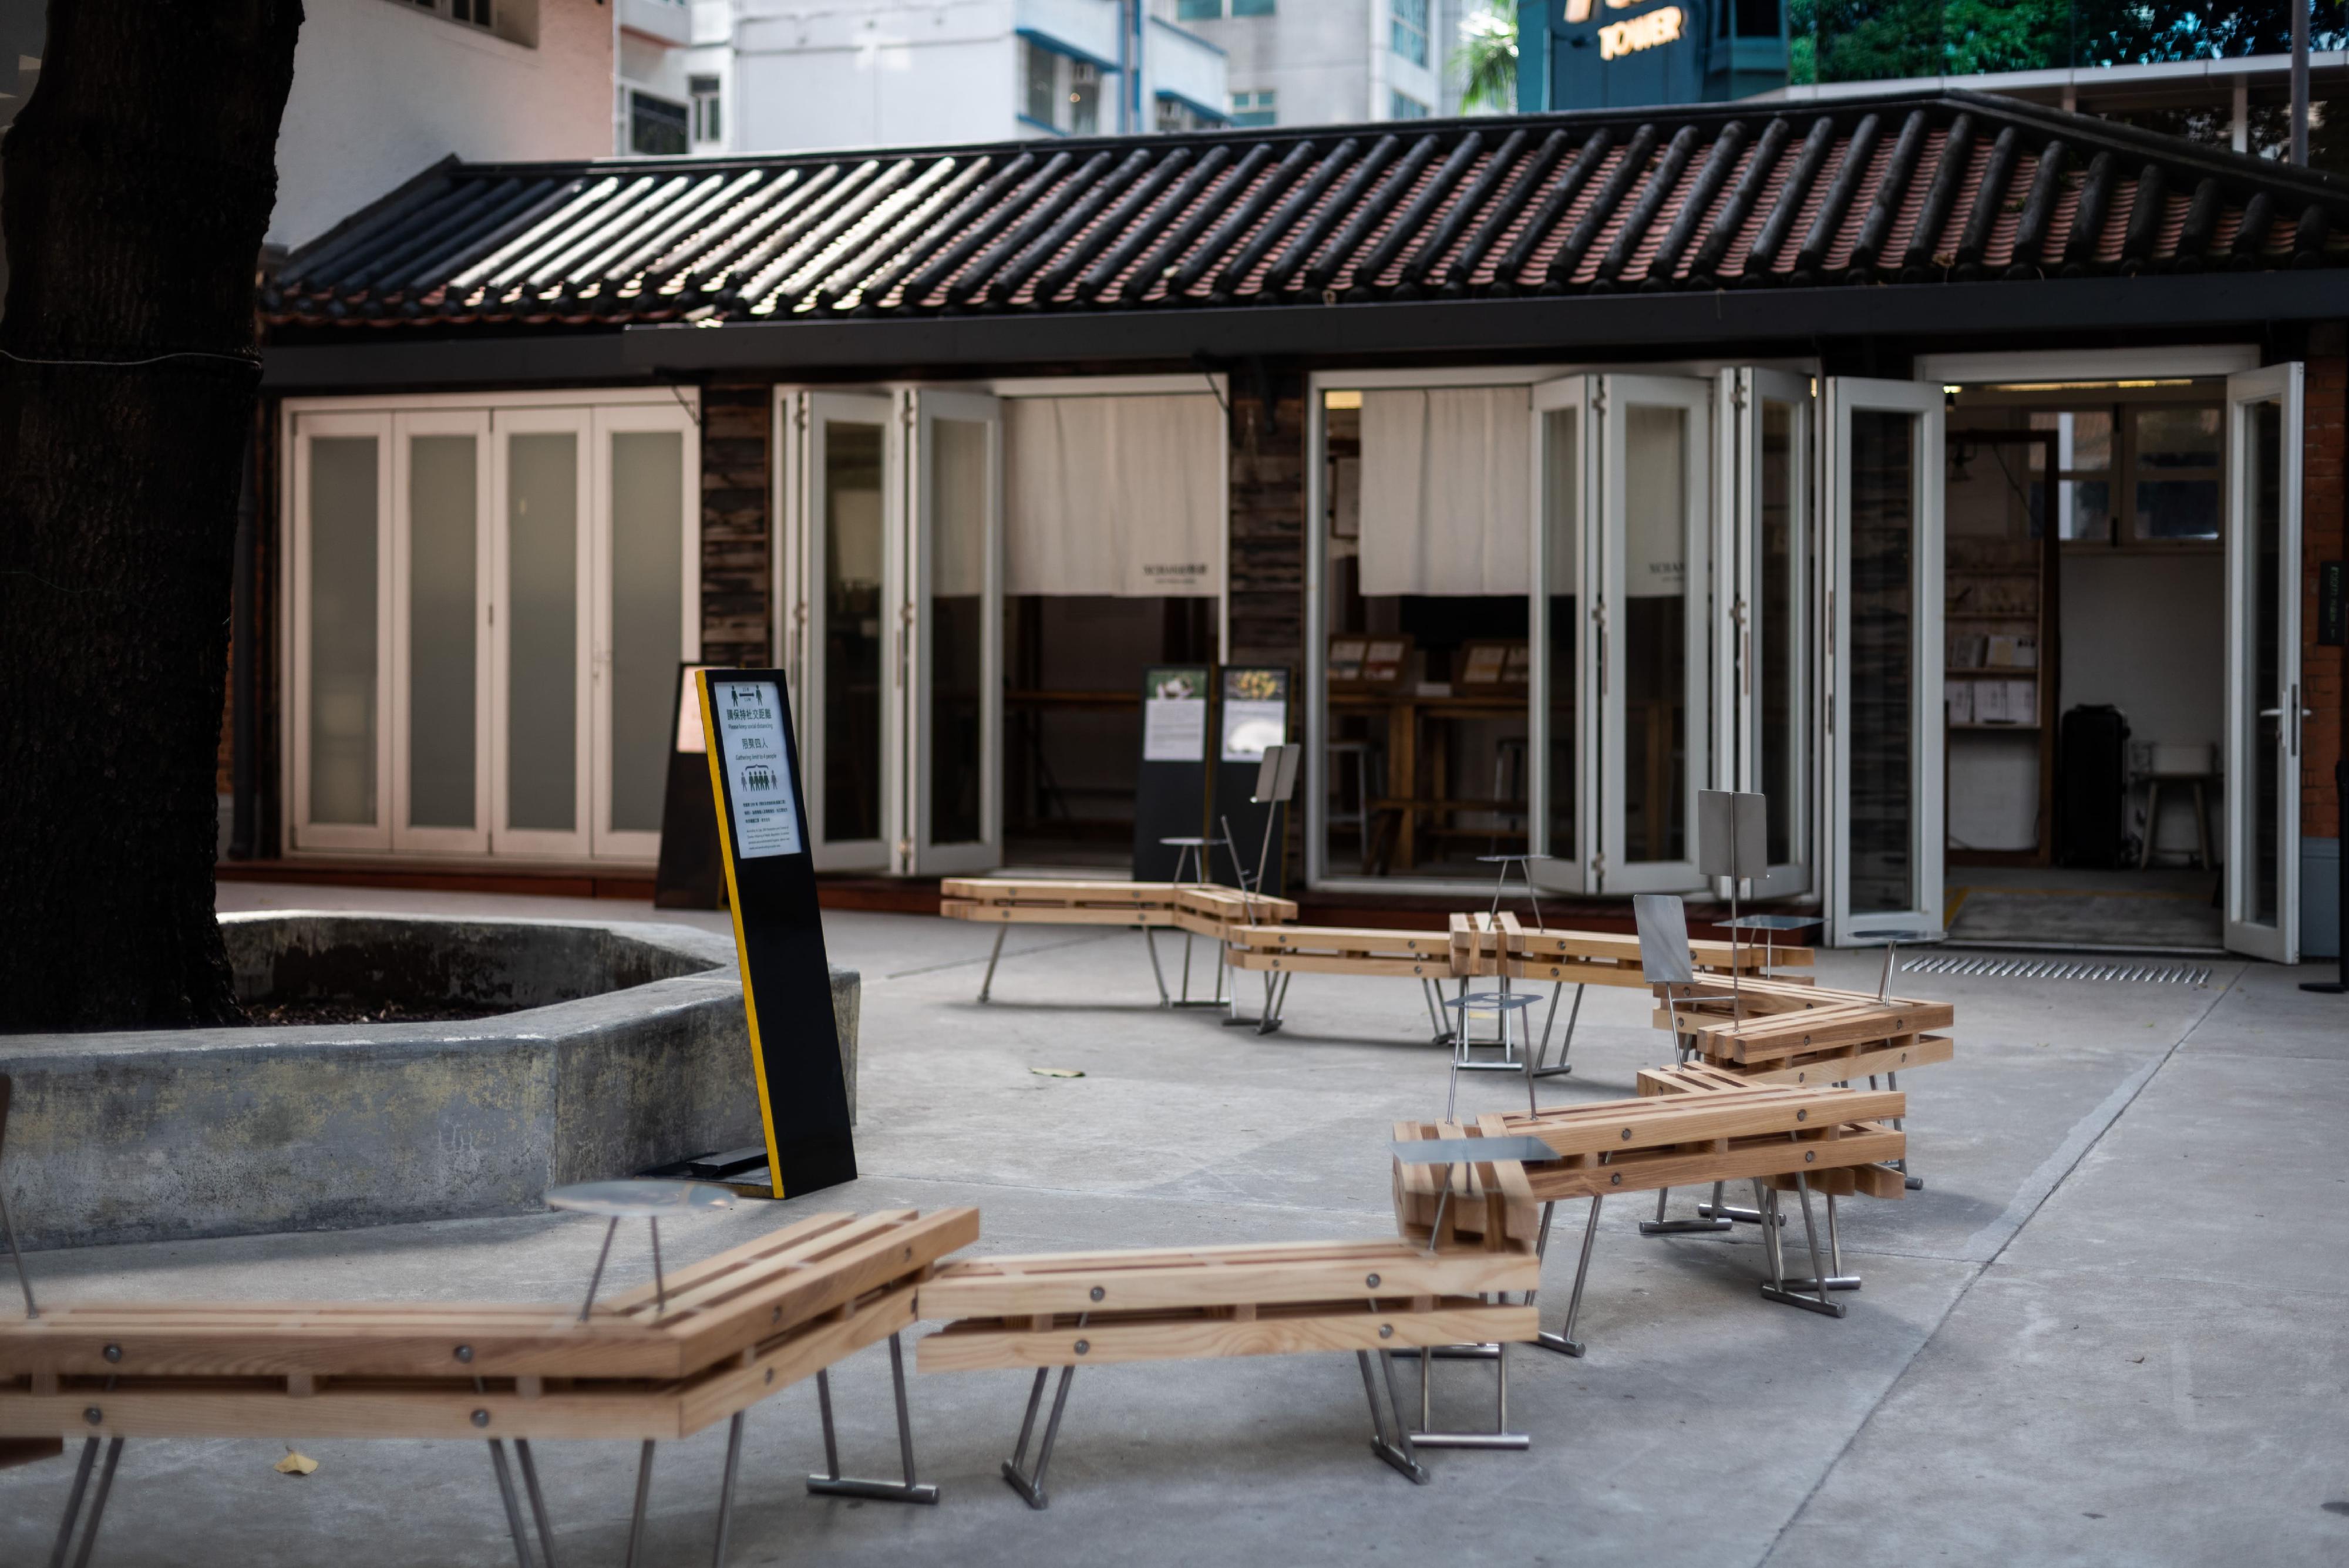 油街實現的全新藝術空間明日（五月二十四日）起向公眾開放。圖示建築工作室napp studio的藝術座椅《連里枝》設置於油街實現戶外空間。